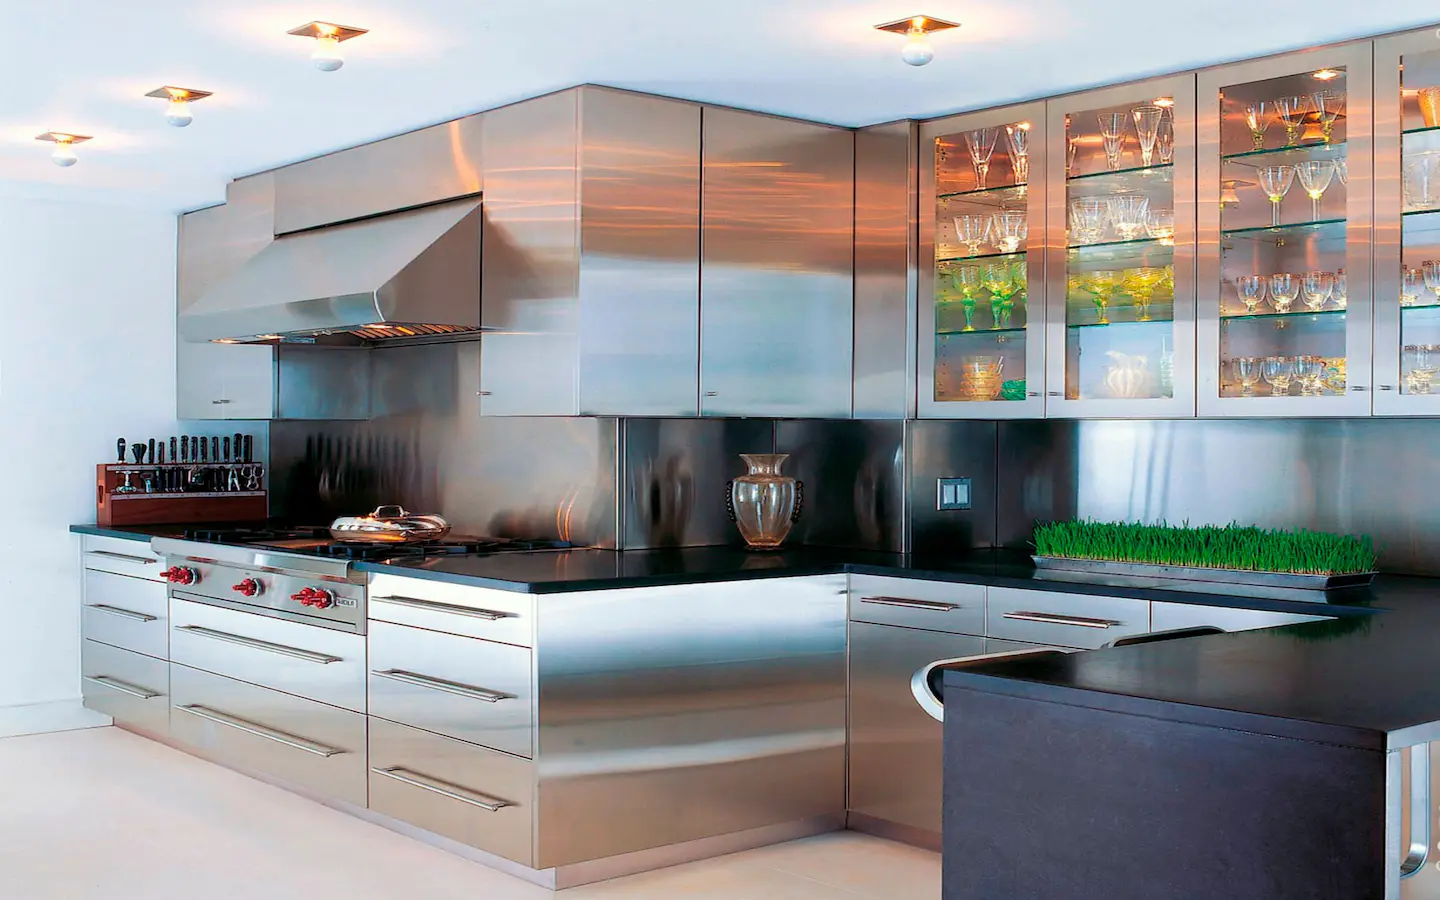 Aluminum Kitchen Cabinets